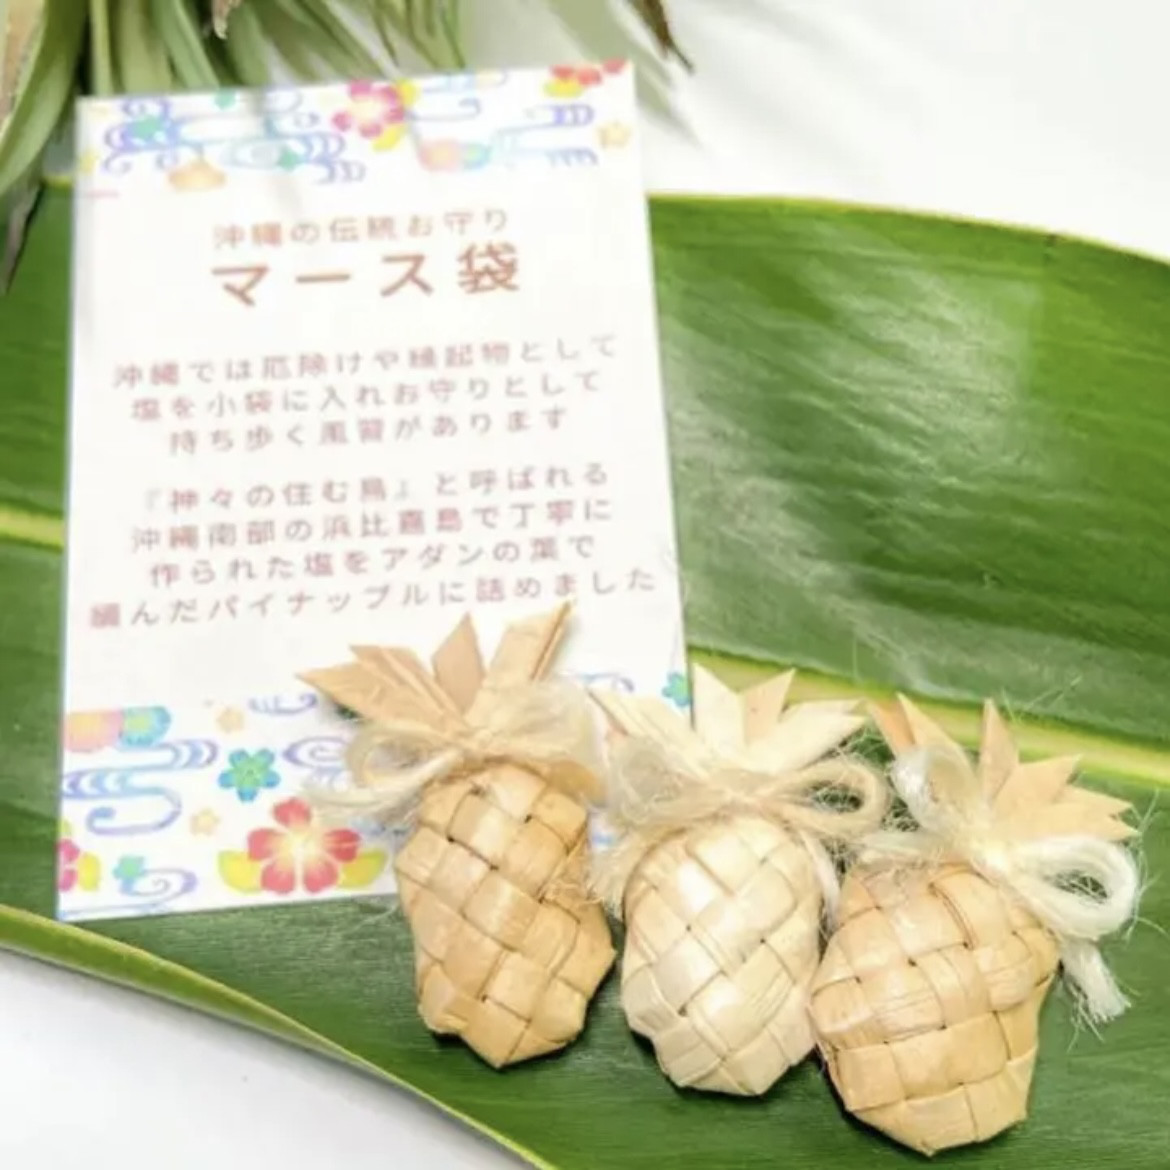 ラウハラのマース(塩)袋 :パイナップル / 沖縄・ハワイLovers に 天然